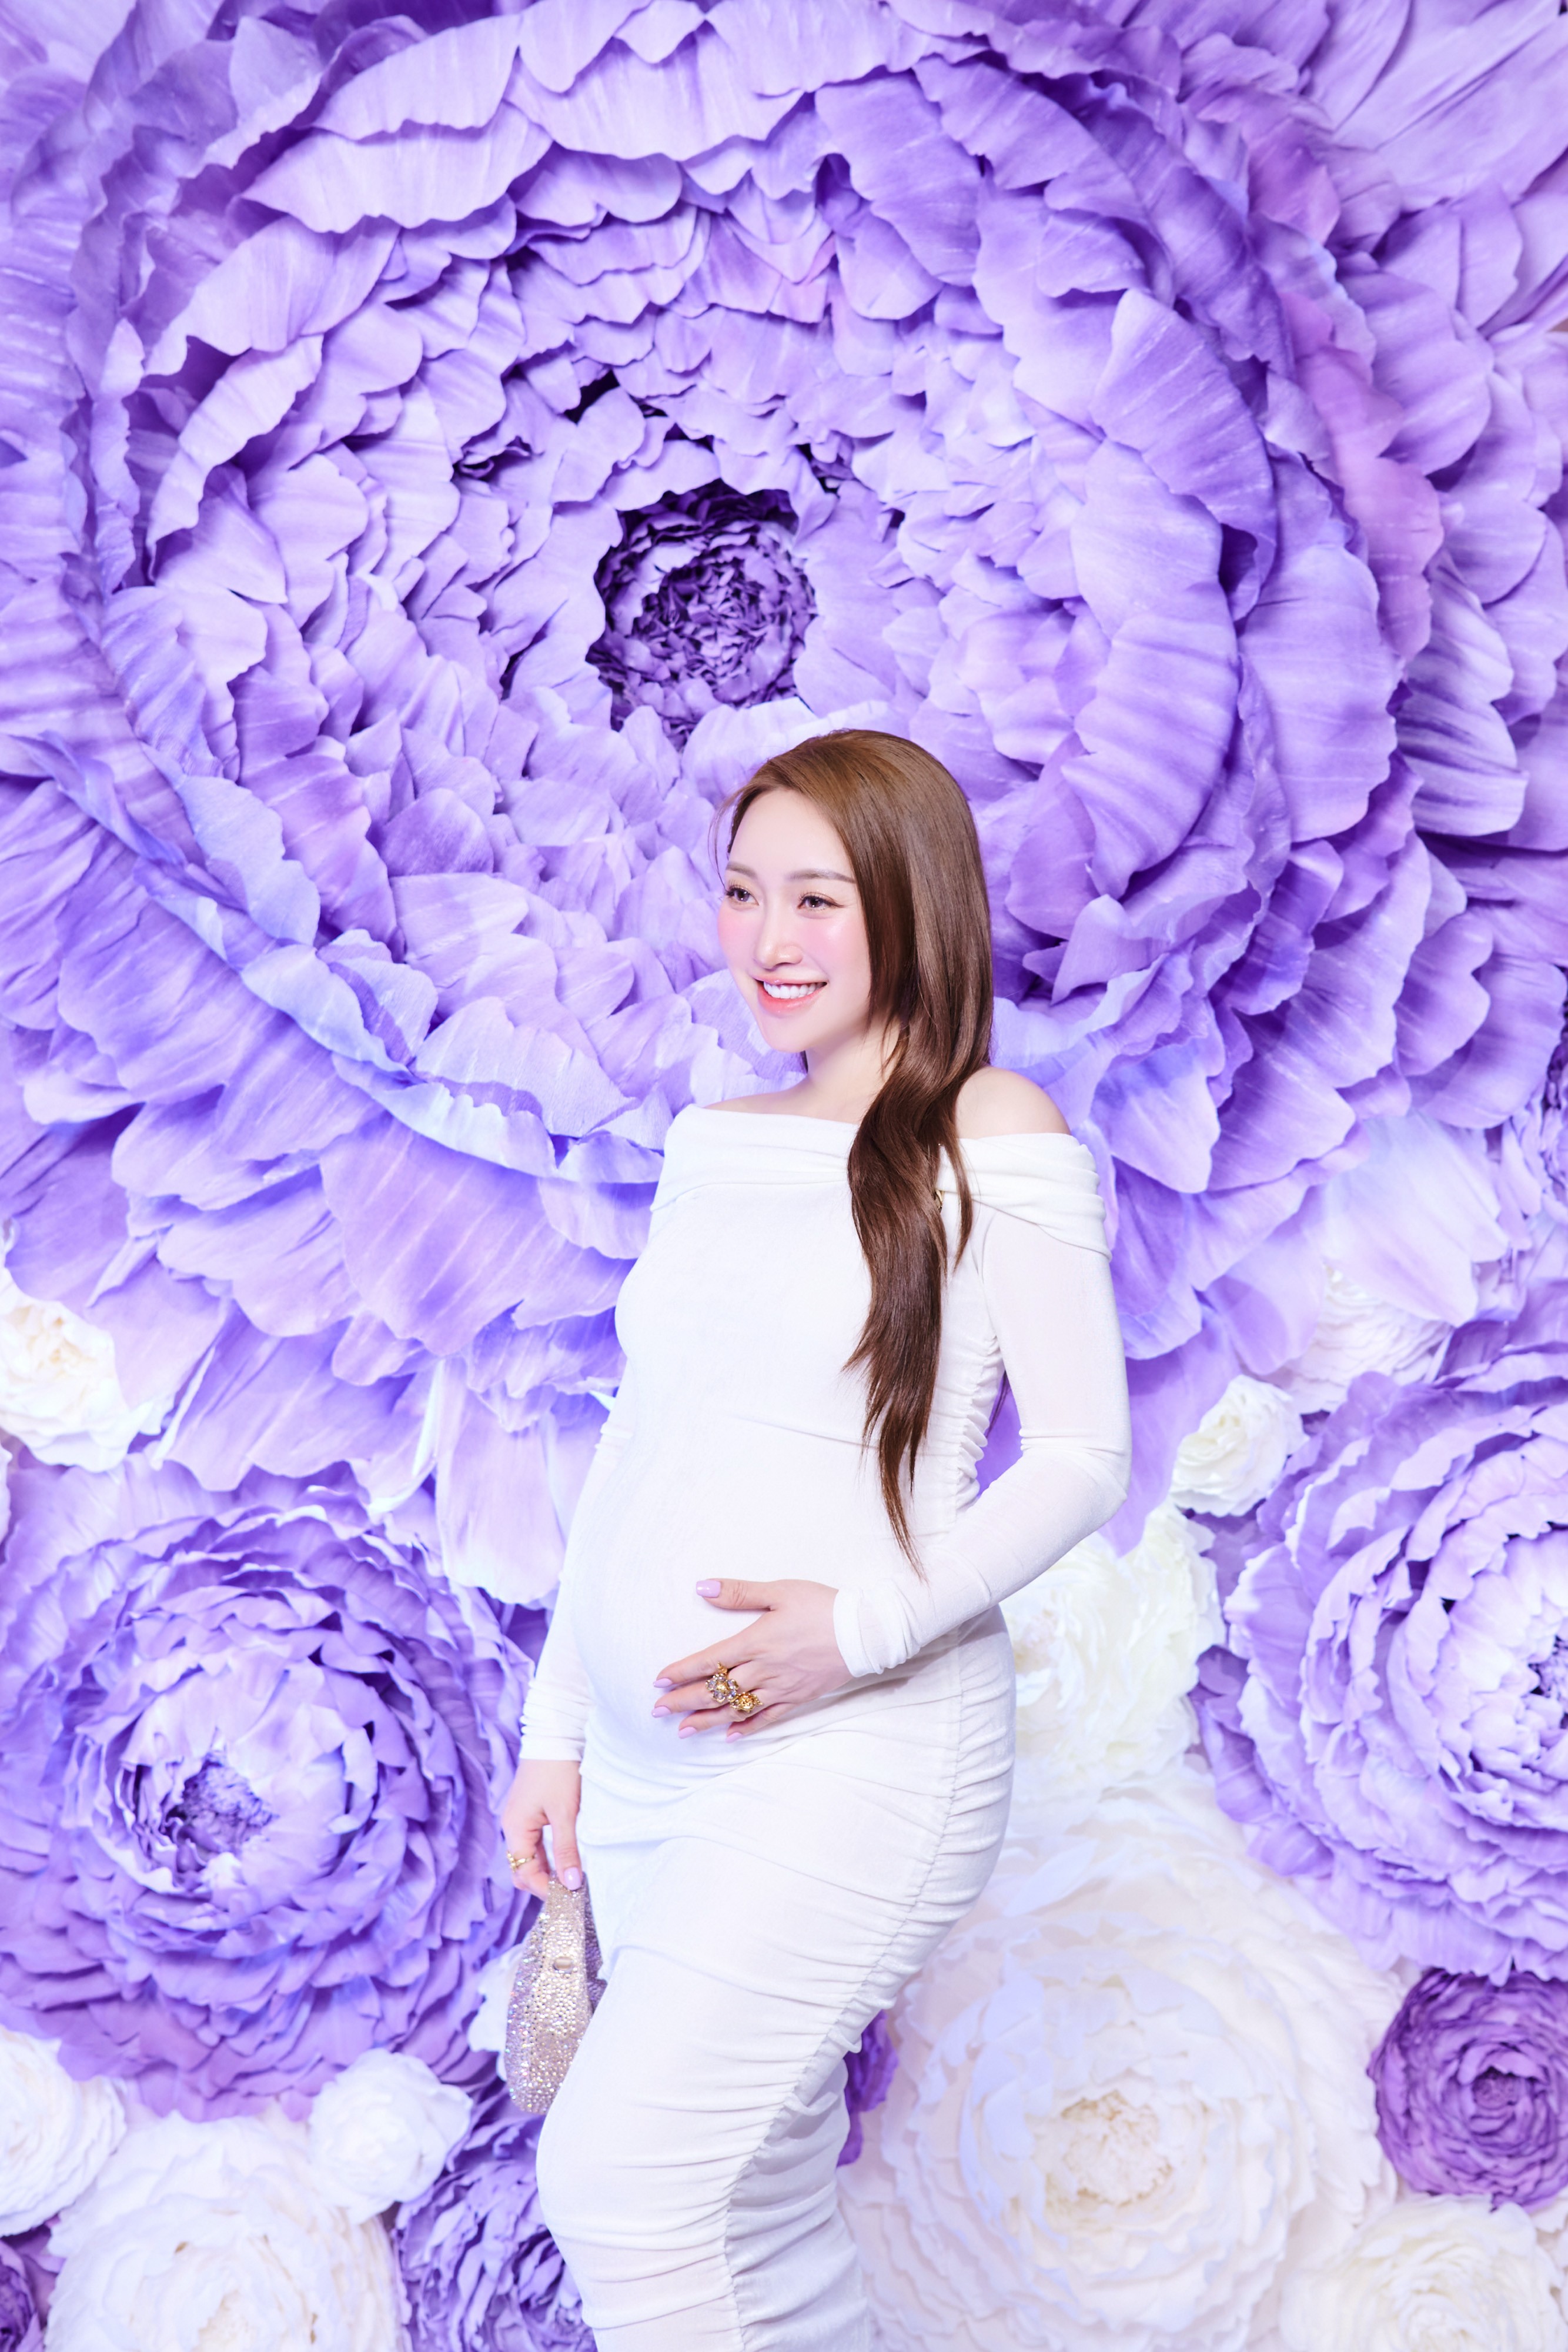 Bà xã Chi Bảo xuất hiện rạng rỡ trong sự kiện hiếm hoi cô tham gia khi đang trong thai kỳ. Nữ doanh nhân diện váy trắng khoe khéo bụng bầu cùng phong cách trang điểm và làm tóc tinh giản.